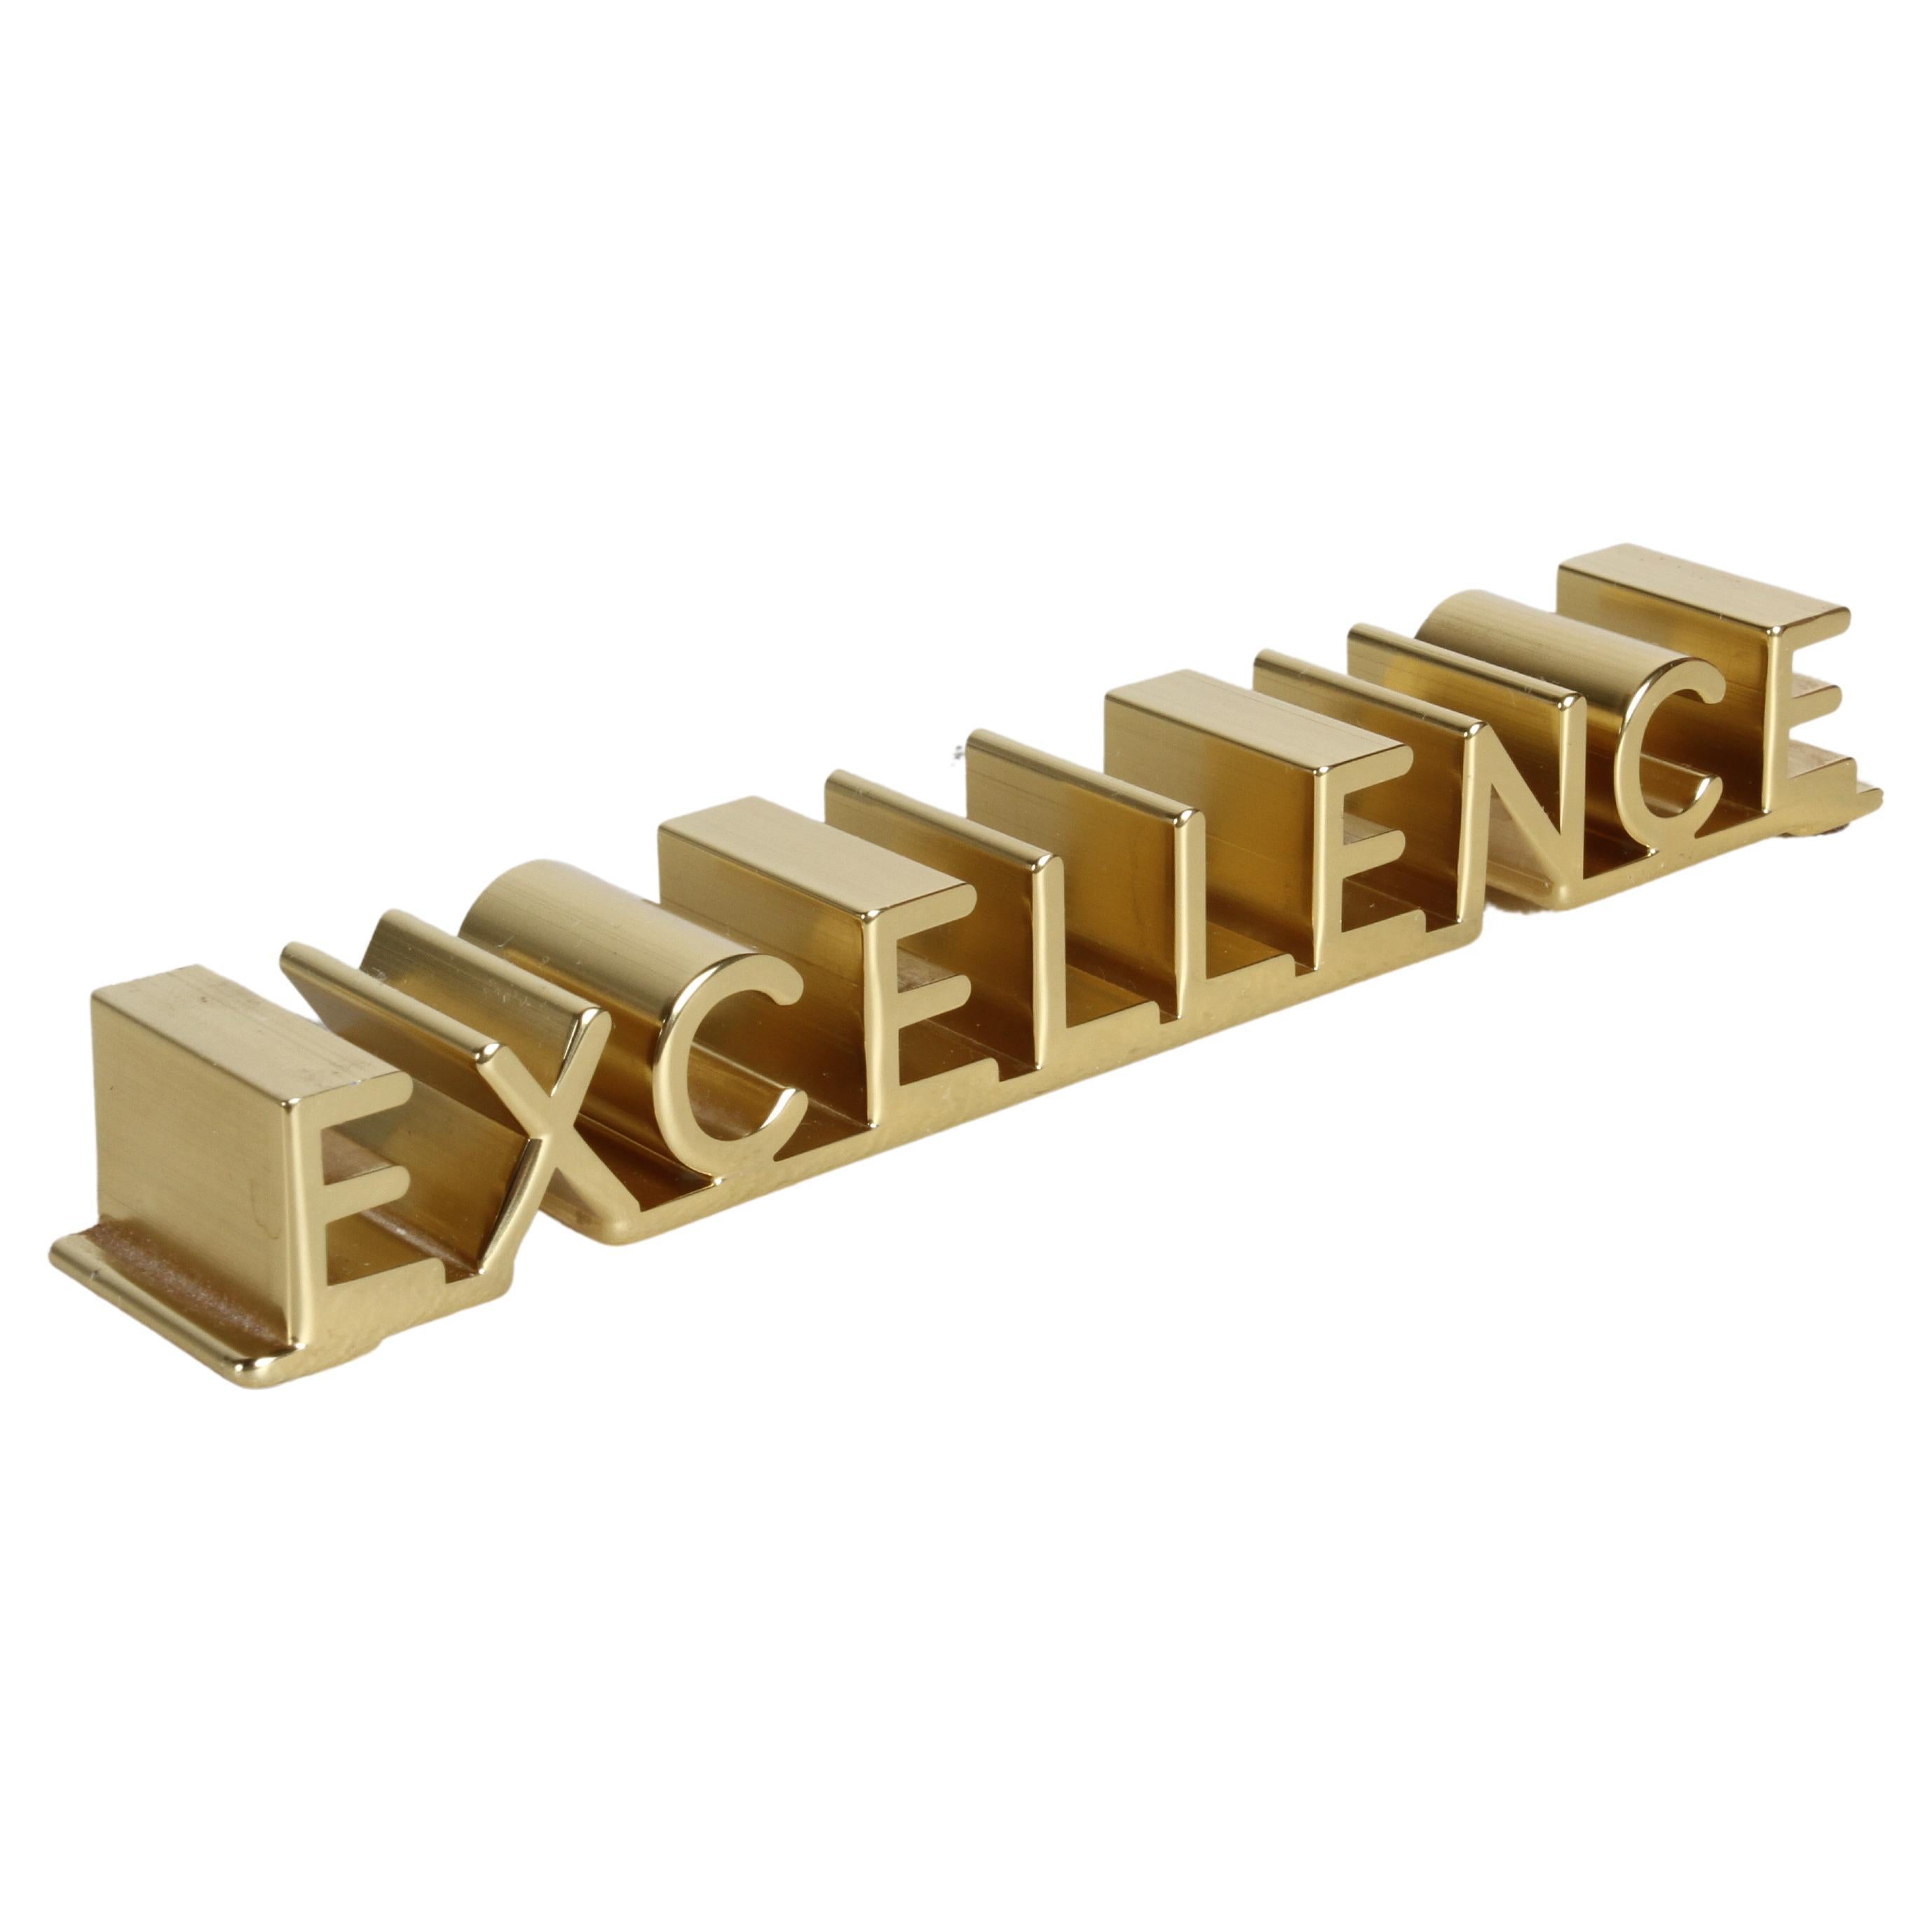 MCM Bruce Fox Gold Anodized Aluminum 3D "Excellence" Motivation Desk Accessory  For Sale